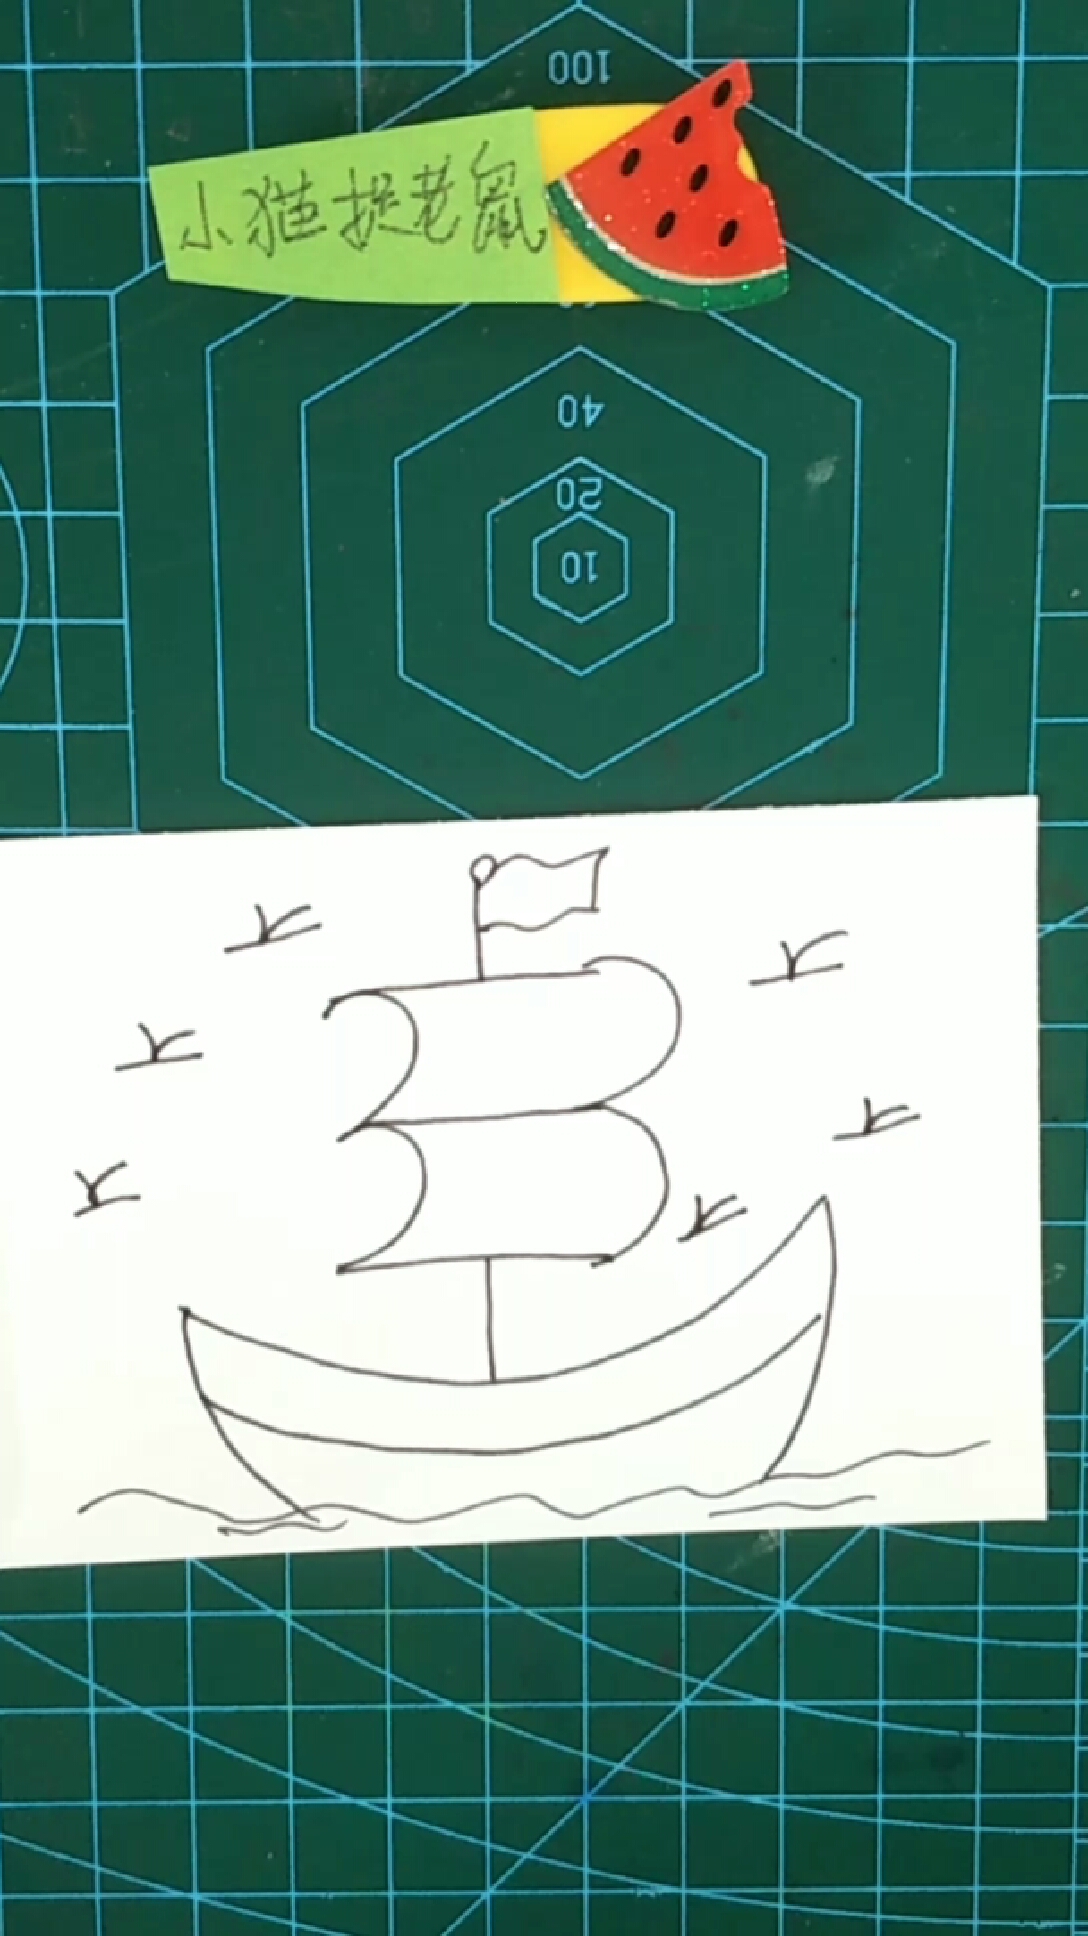 简笔画:两个数字3画小帆船